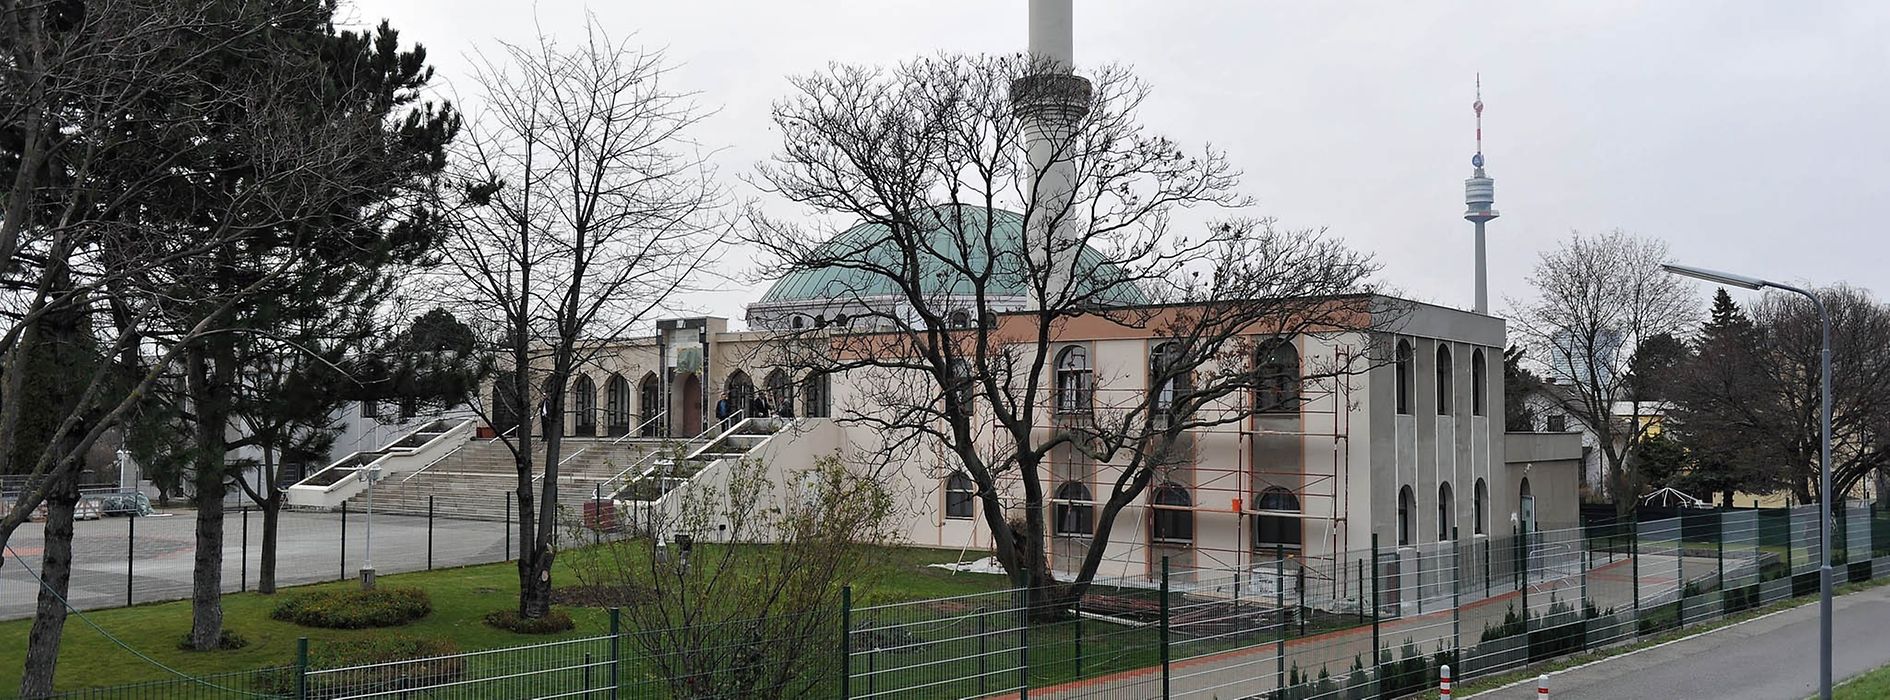 Centro islamico / Moschea